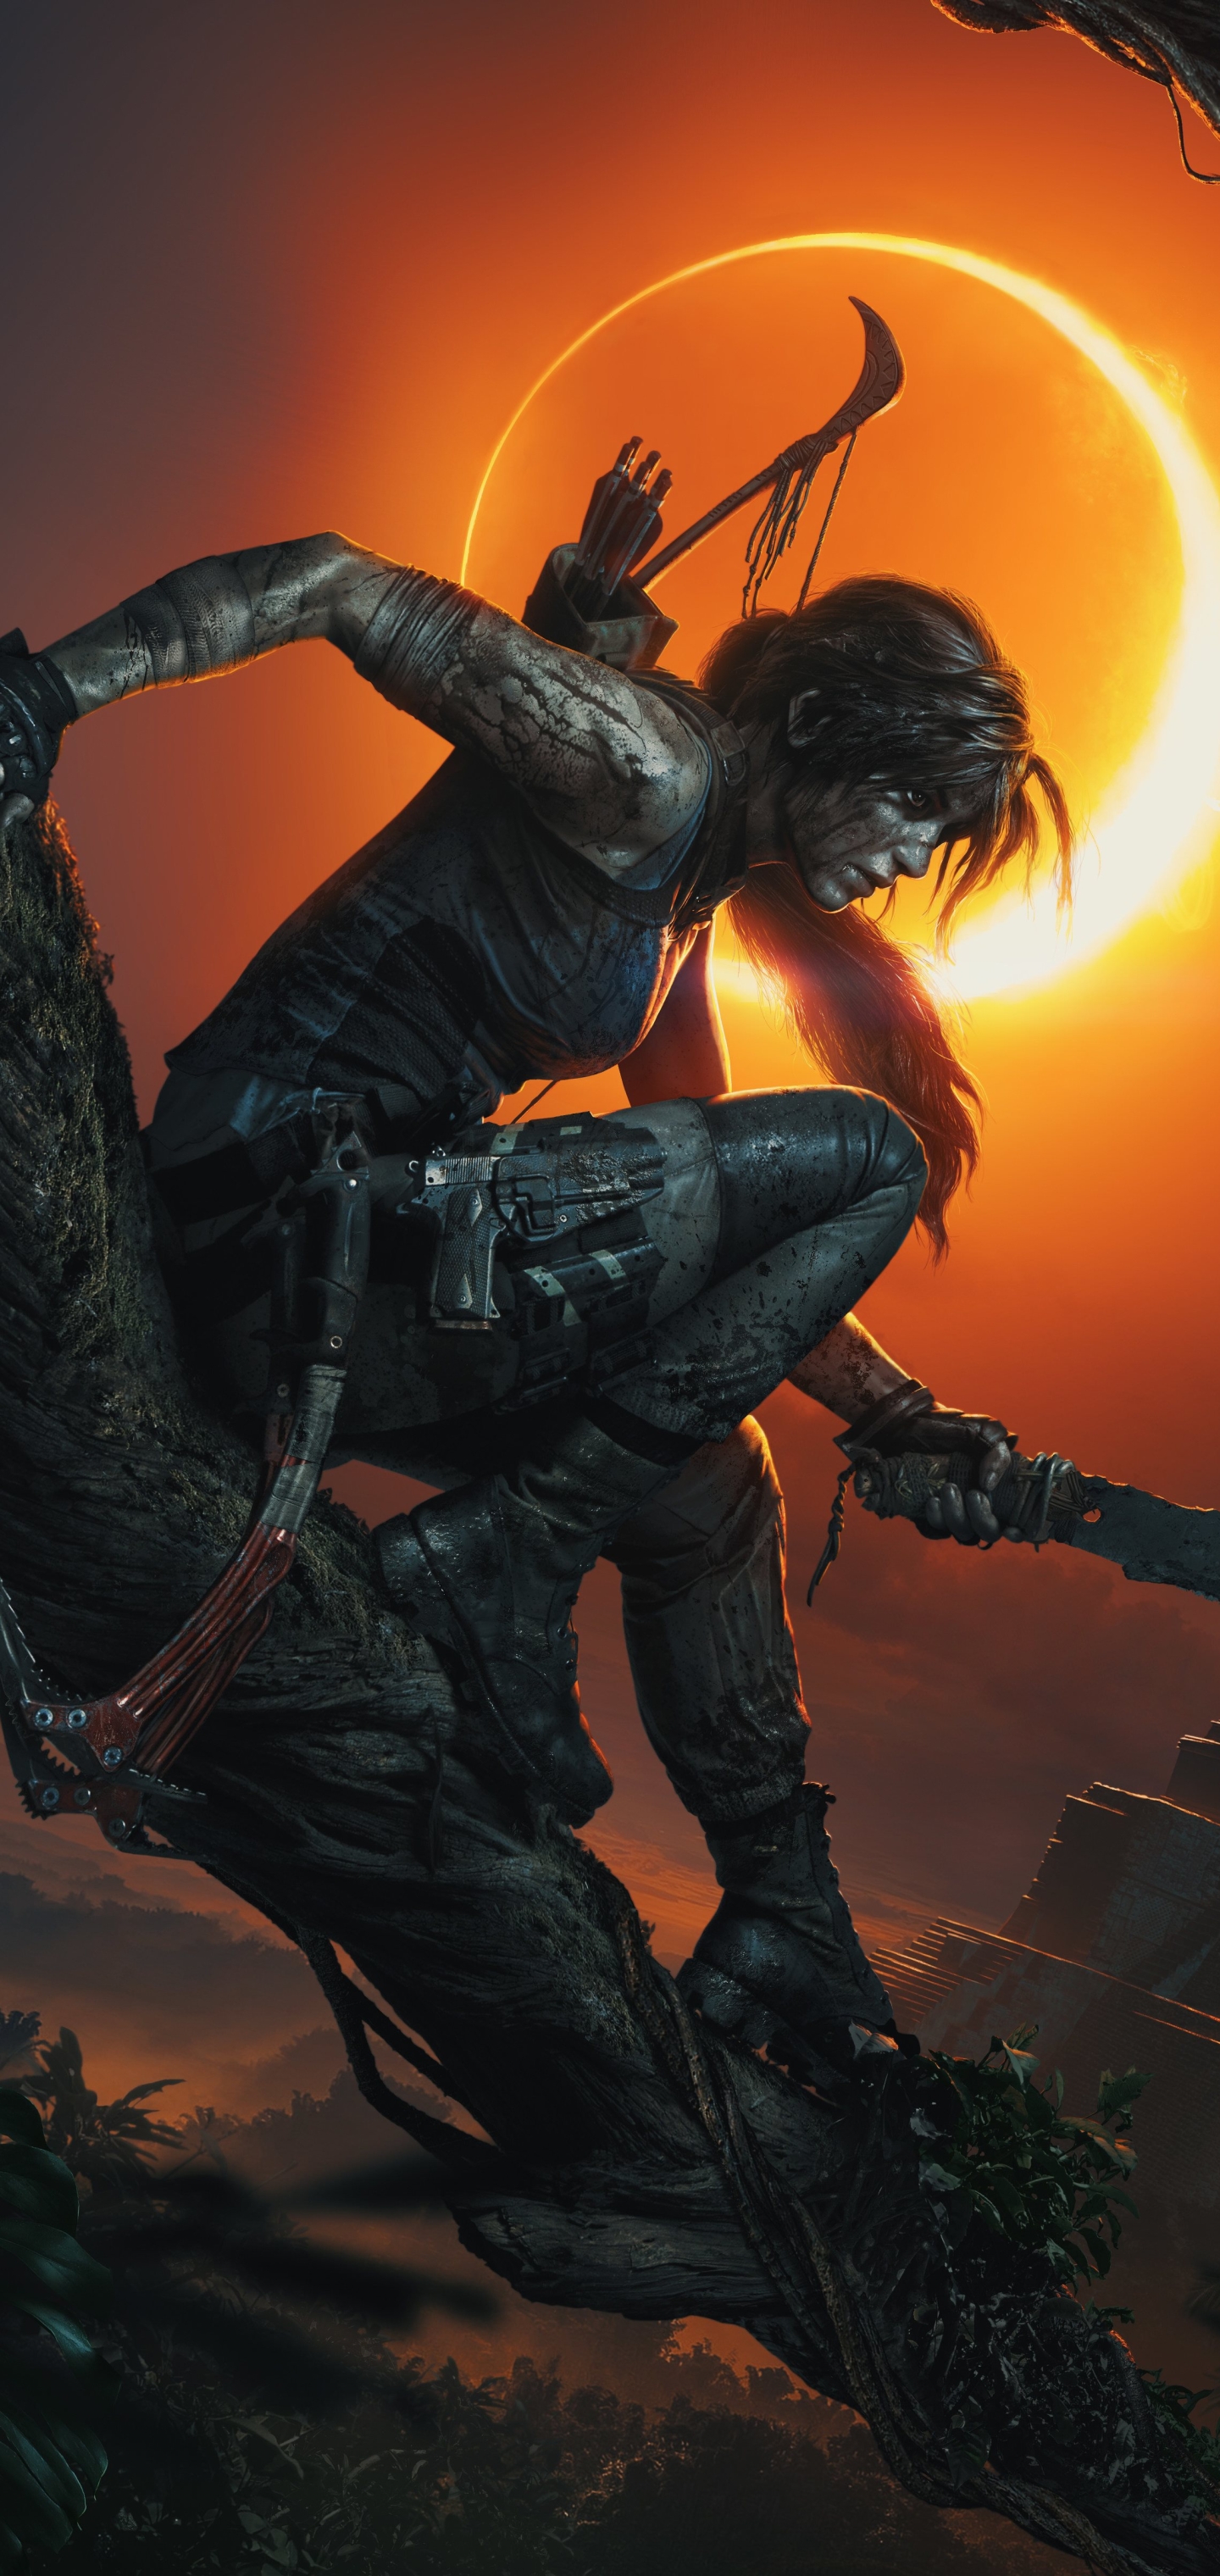 Descarga gratuita de fondo de pantalla para móvil de Tomb Raider, Videojuego, Mujer Guerrera, Lara Croft, Shadow Of The Tomb Raider.